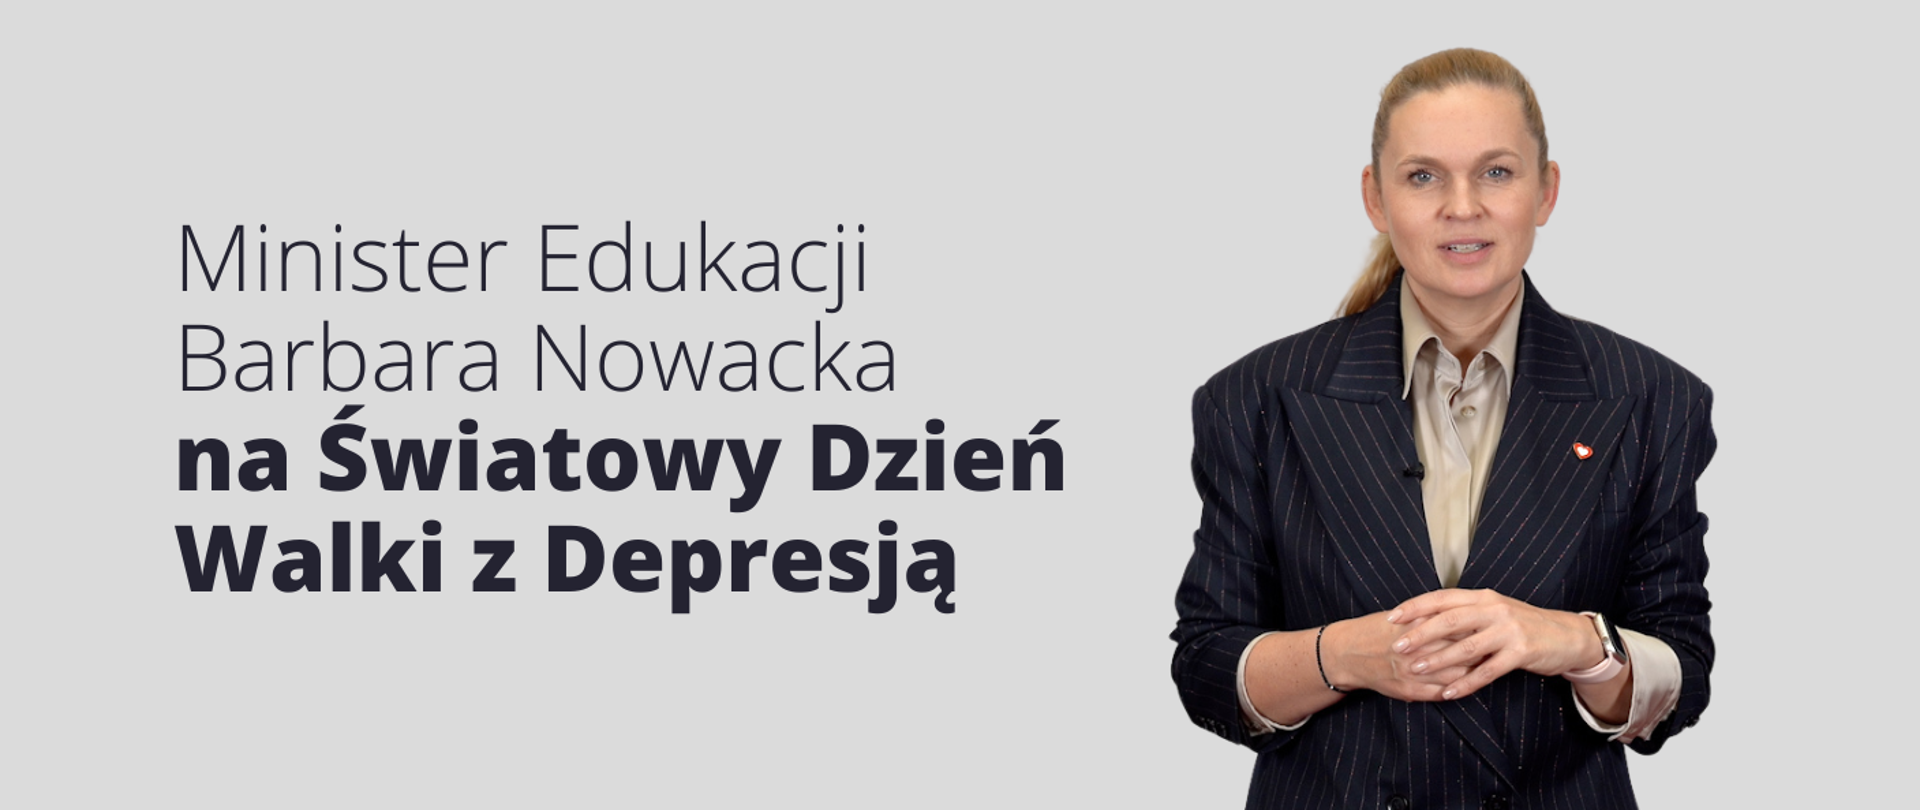 Minister Edukacji Barbara Nowacka na Światowy Dzień Walki z Depresją